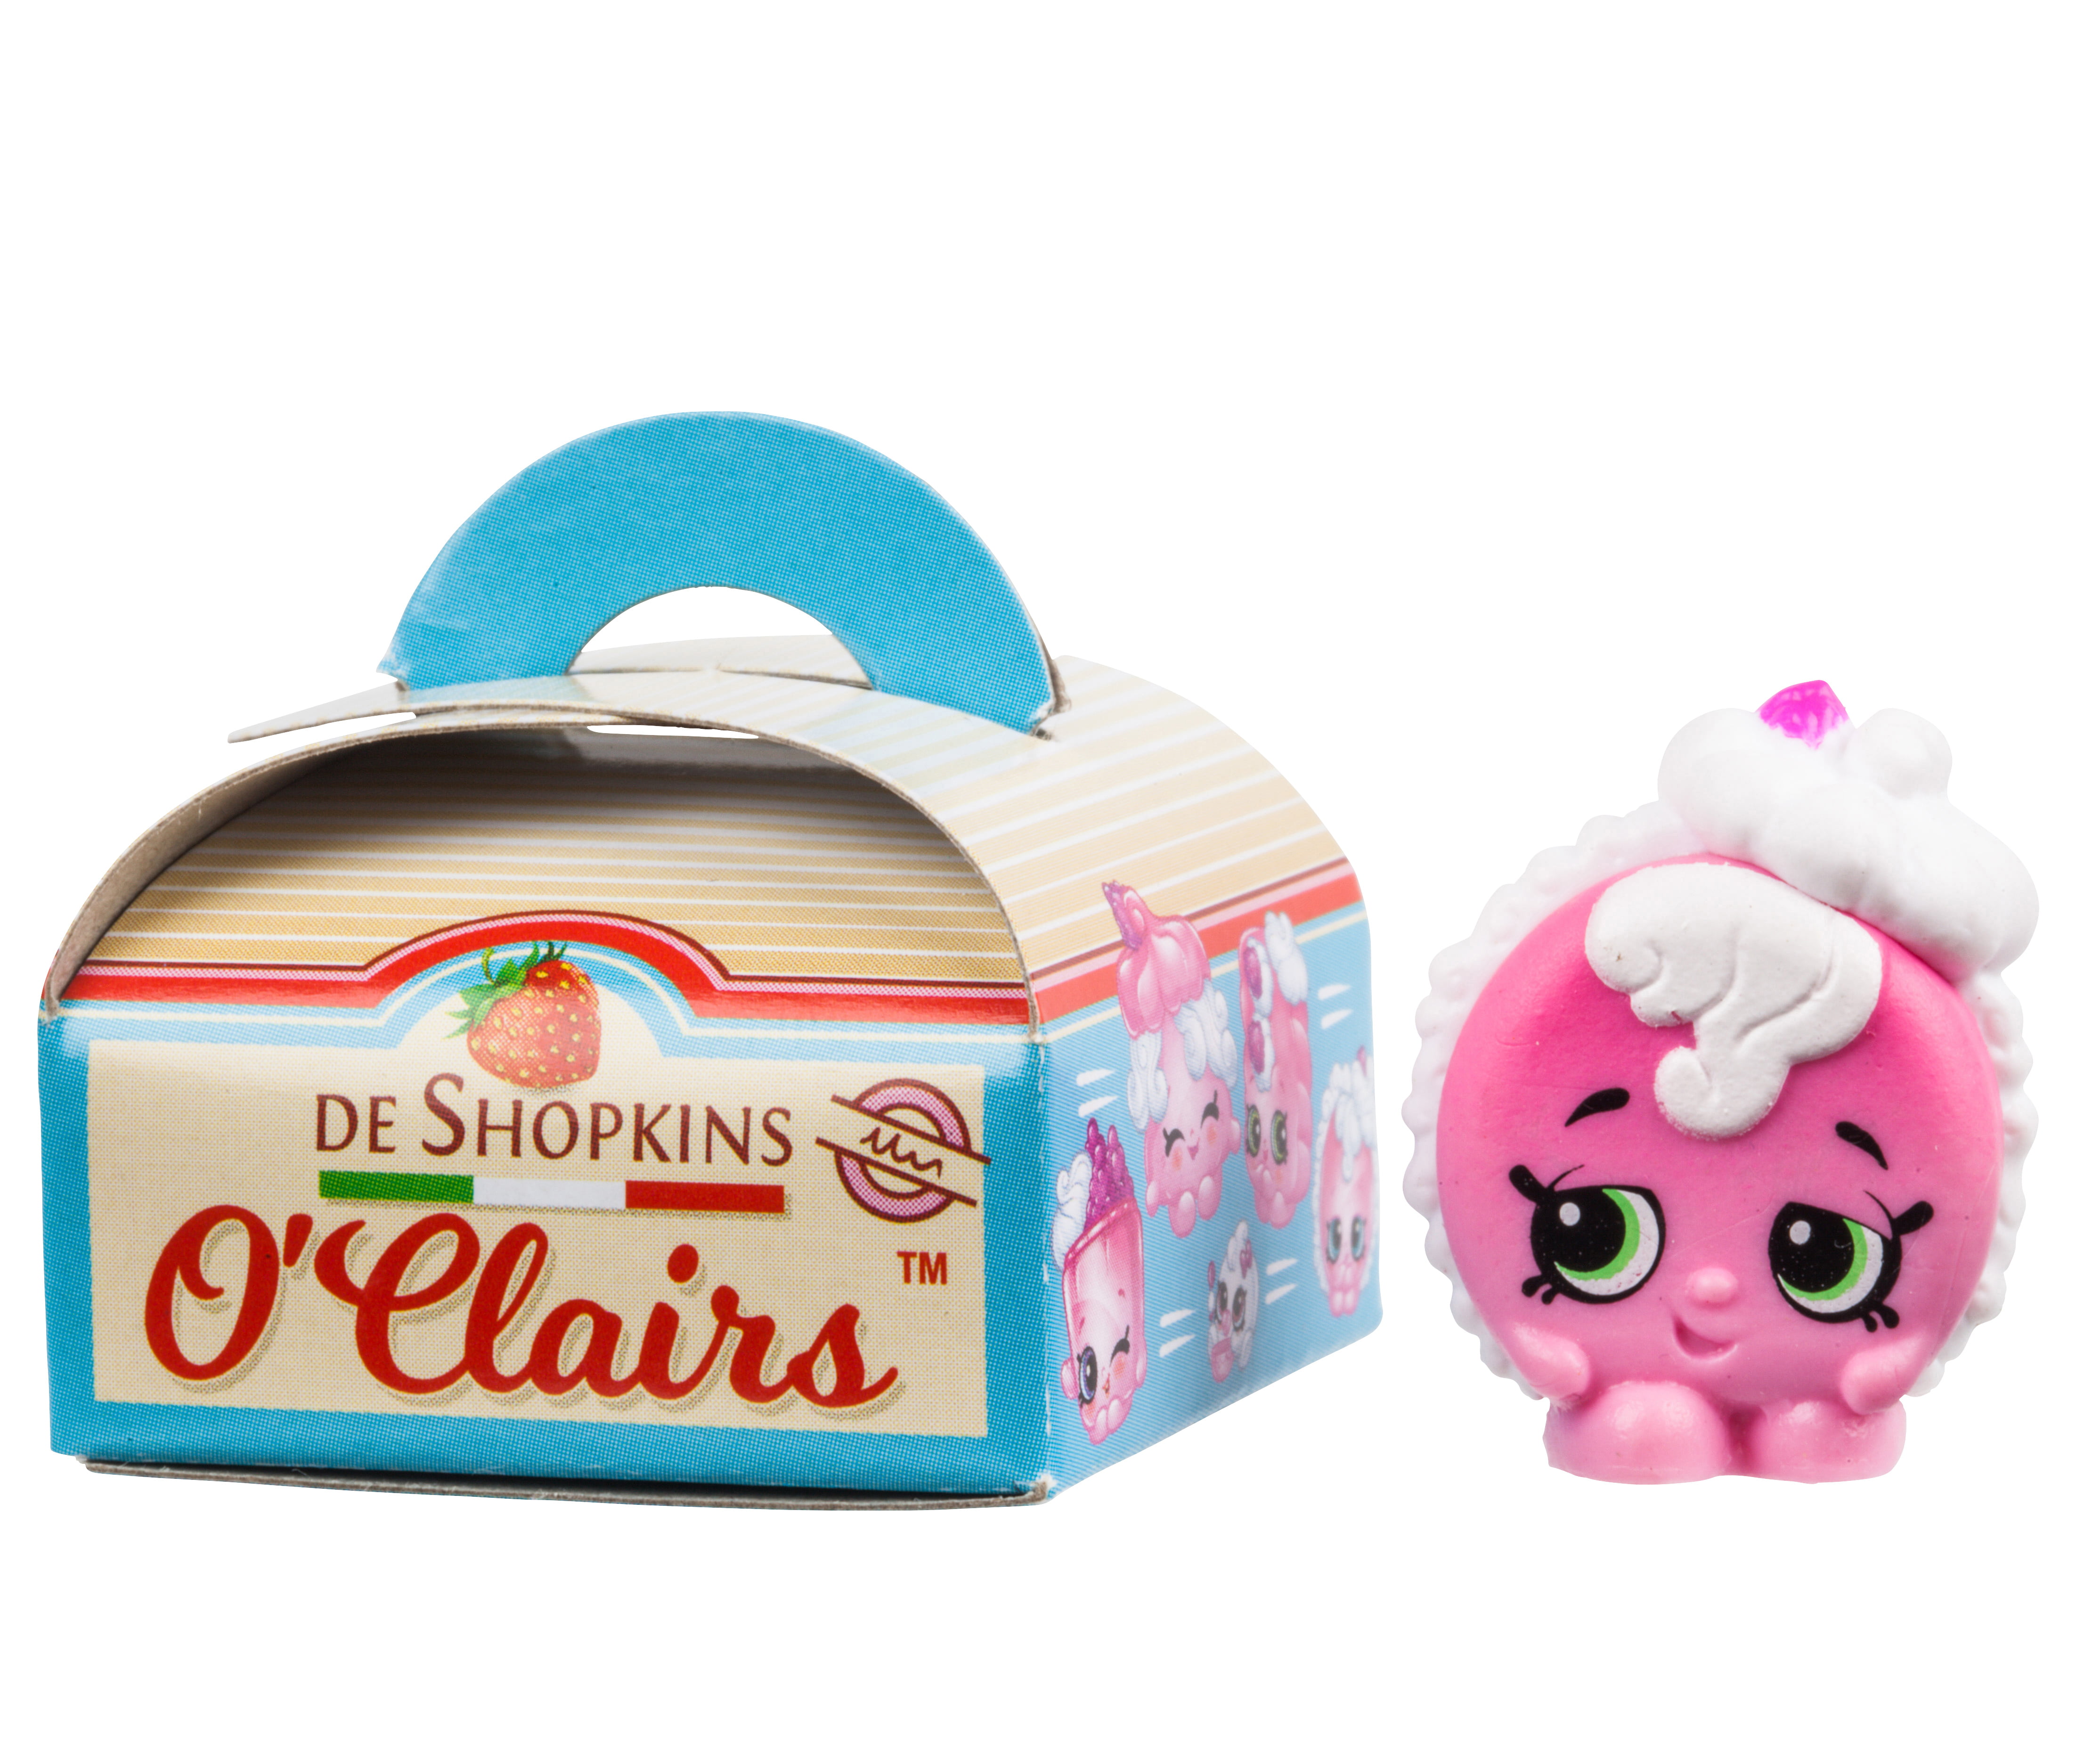 REDUCED Shopkins Family Mini Packs Shopper Pack Season 11 NEW Damaged Packaging 